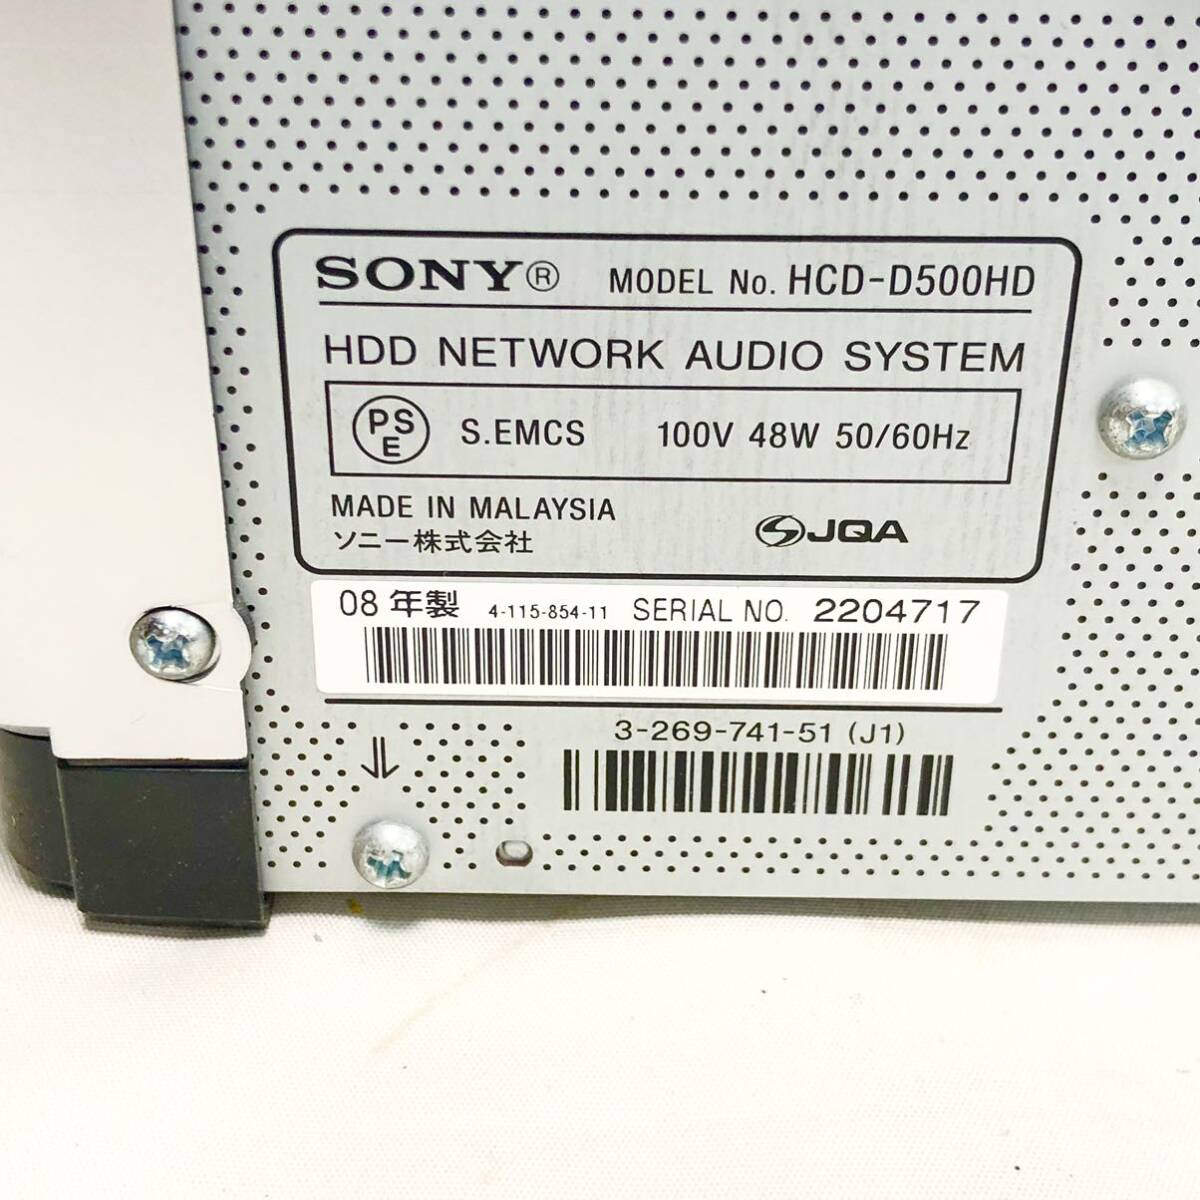 Sony NAS-D500HD netjuke  сам товар   только   включение питания  ,  основа   проверено на работоспособность  SONY  Sony HDD компонент    серебристый   сам товар   только  ( Пульт ДУ . динамик  приложение  нет    )